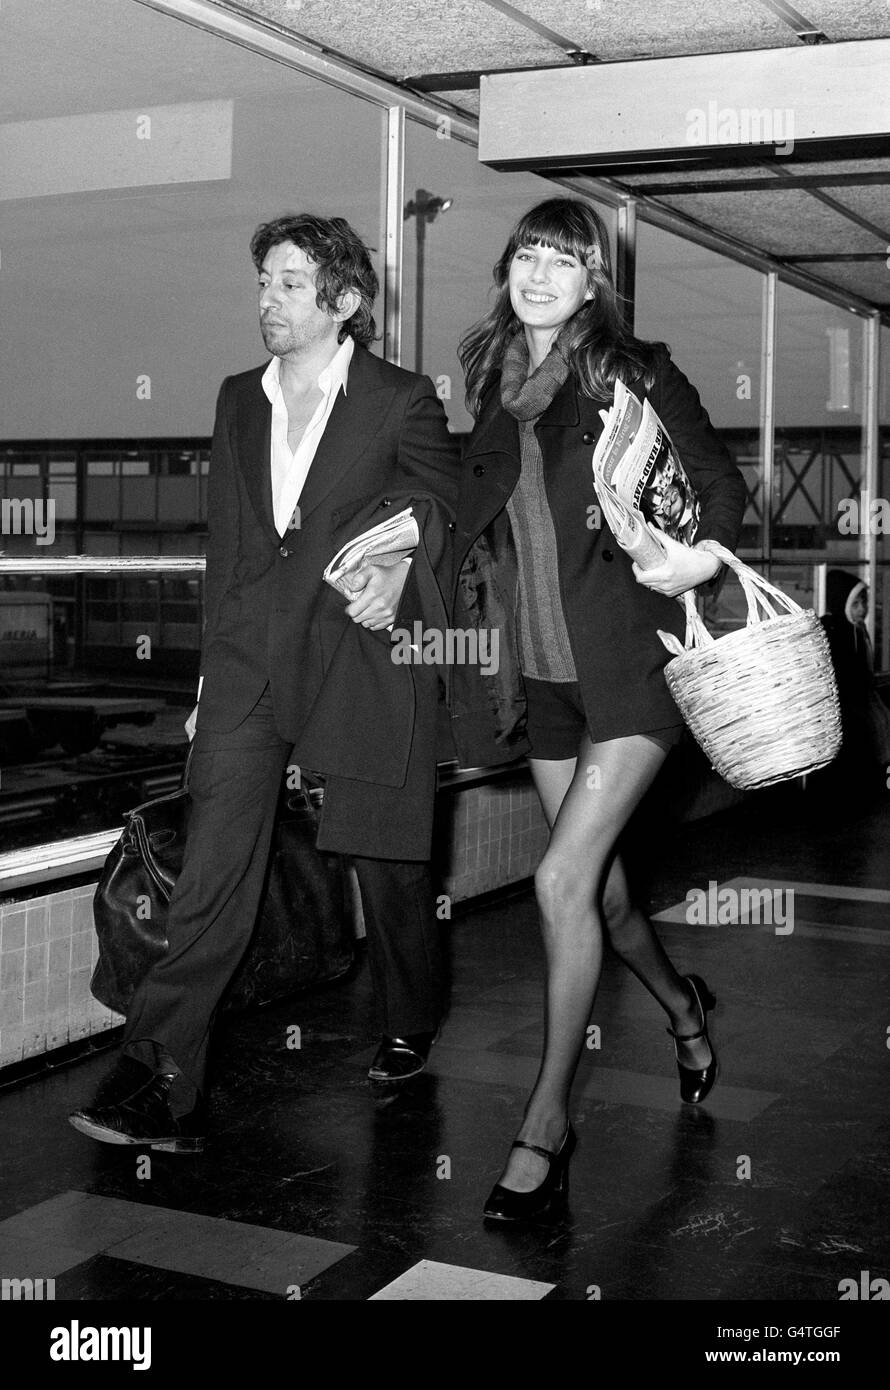 Jane Birkin - aéroport de Heathrow - Londres.L'actrice Jane Birkin avec Serge Gainsbourg à l'aéroport Heathrow de Londres après son arrivée de Paris. Banque D'Images